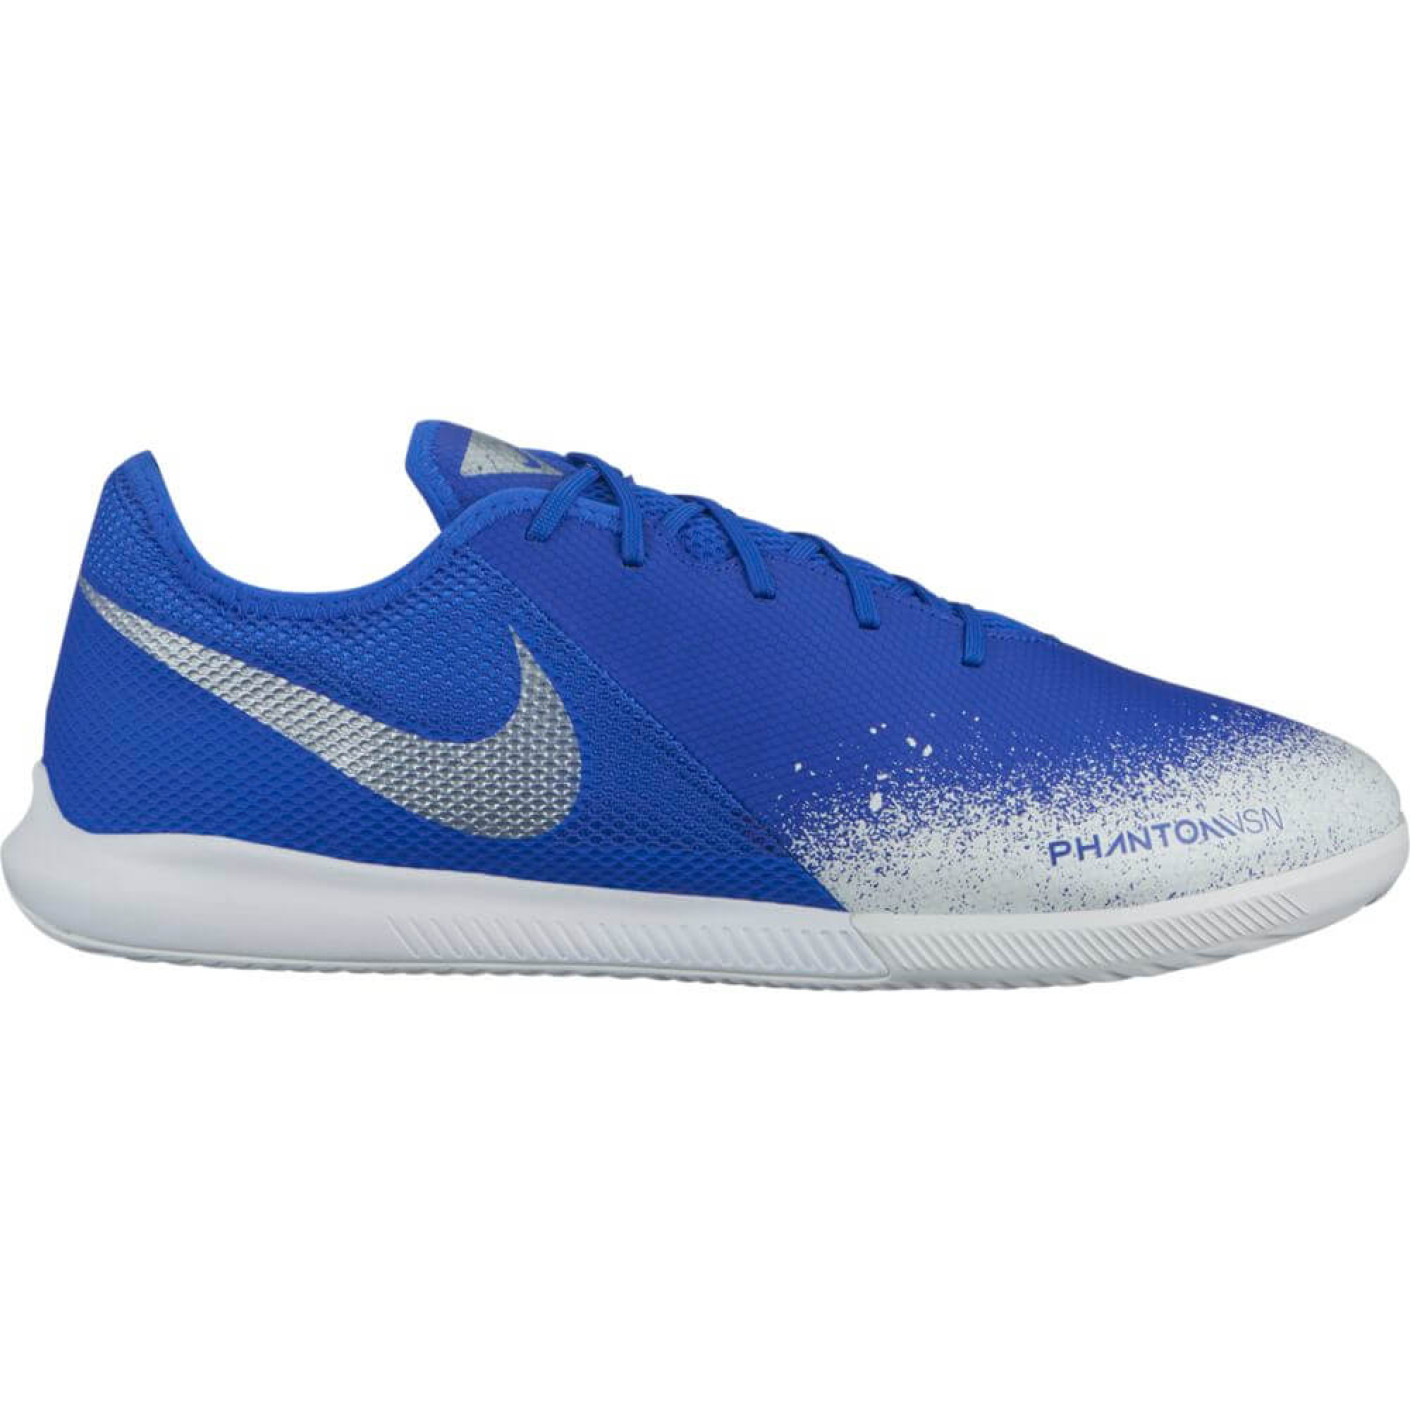 Nike PHANTOM VSN ACADEMY IC Zaalvoetbalschoenen Blauw Zilver Wit